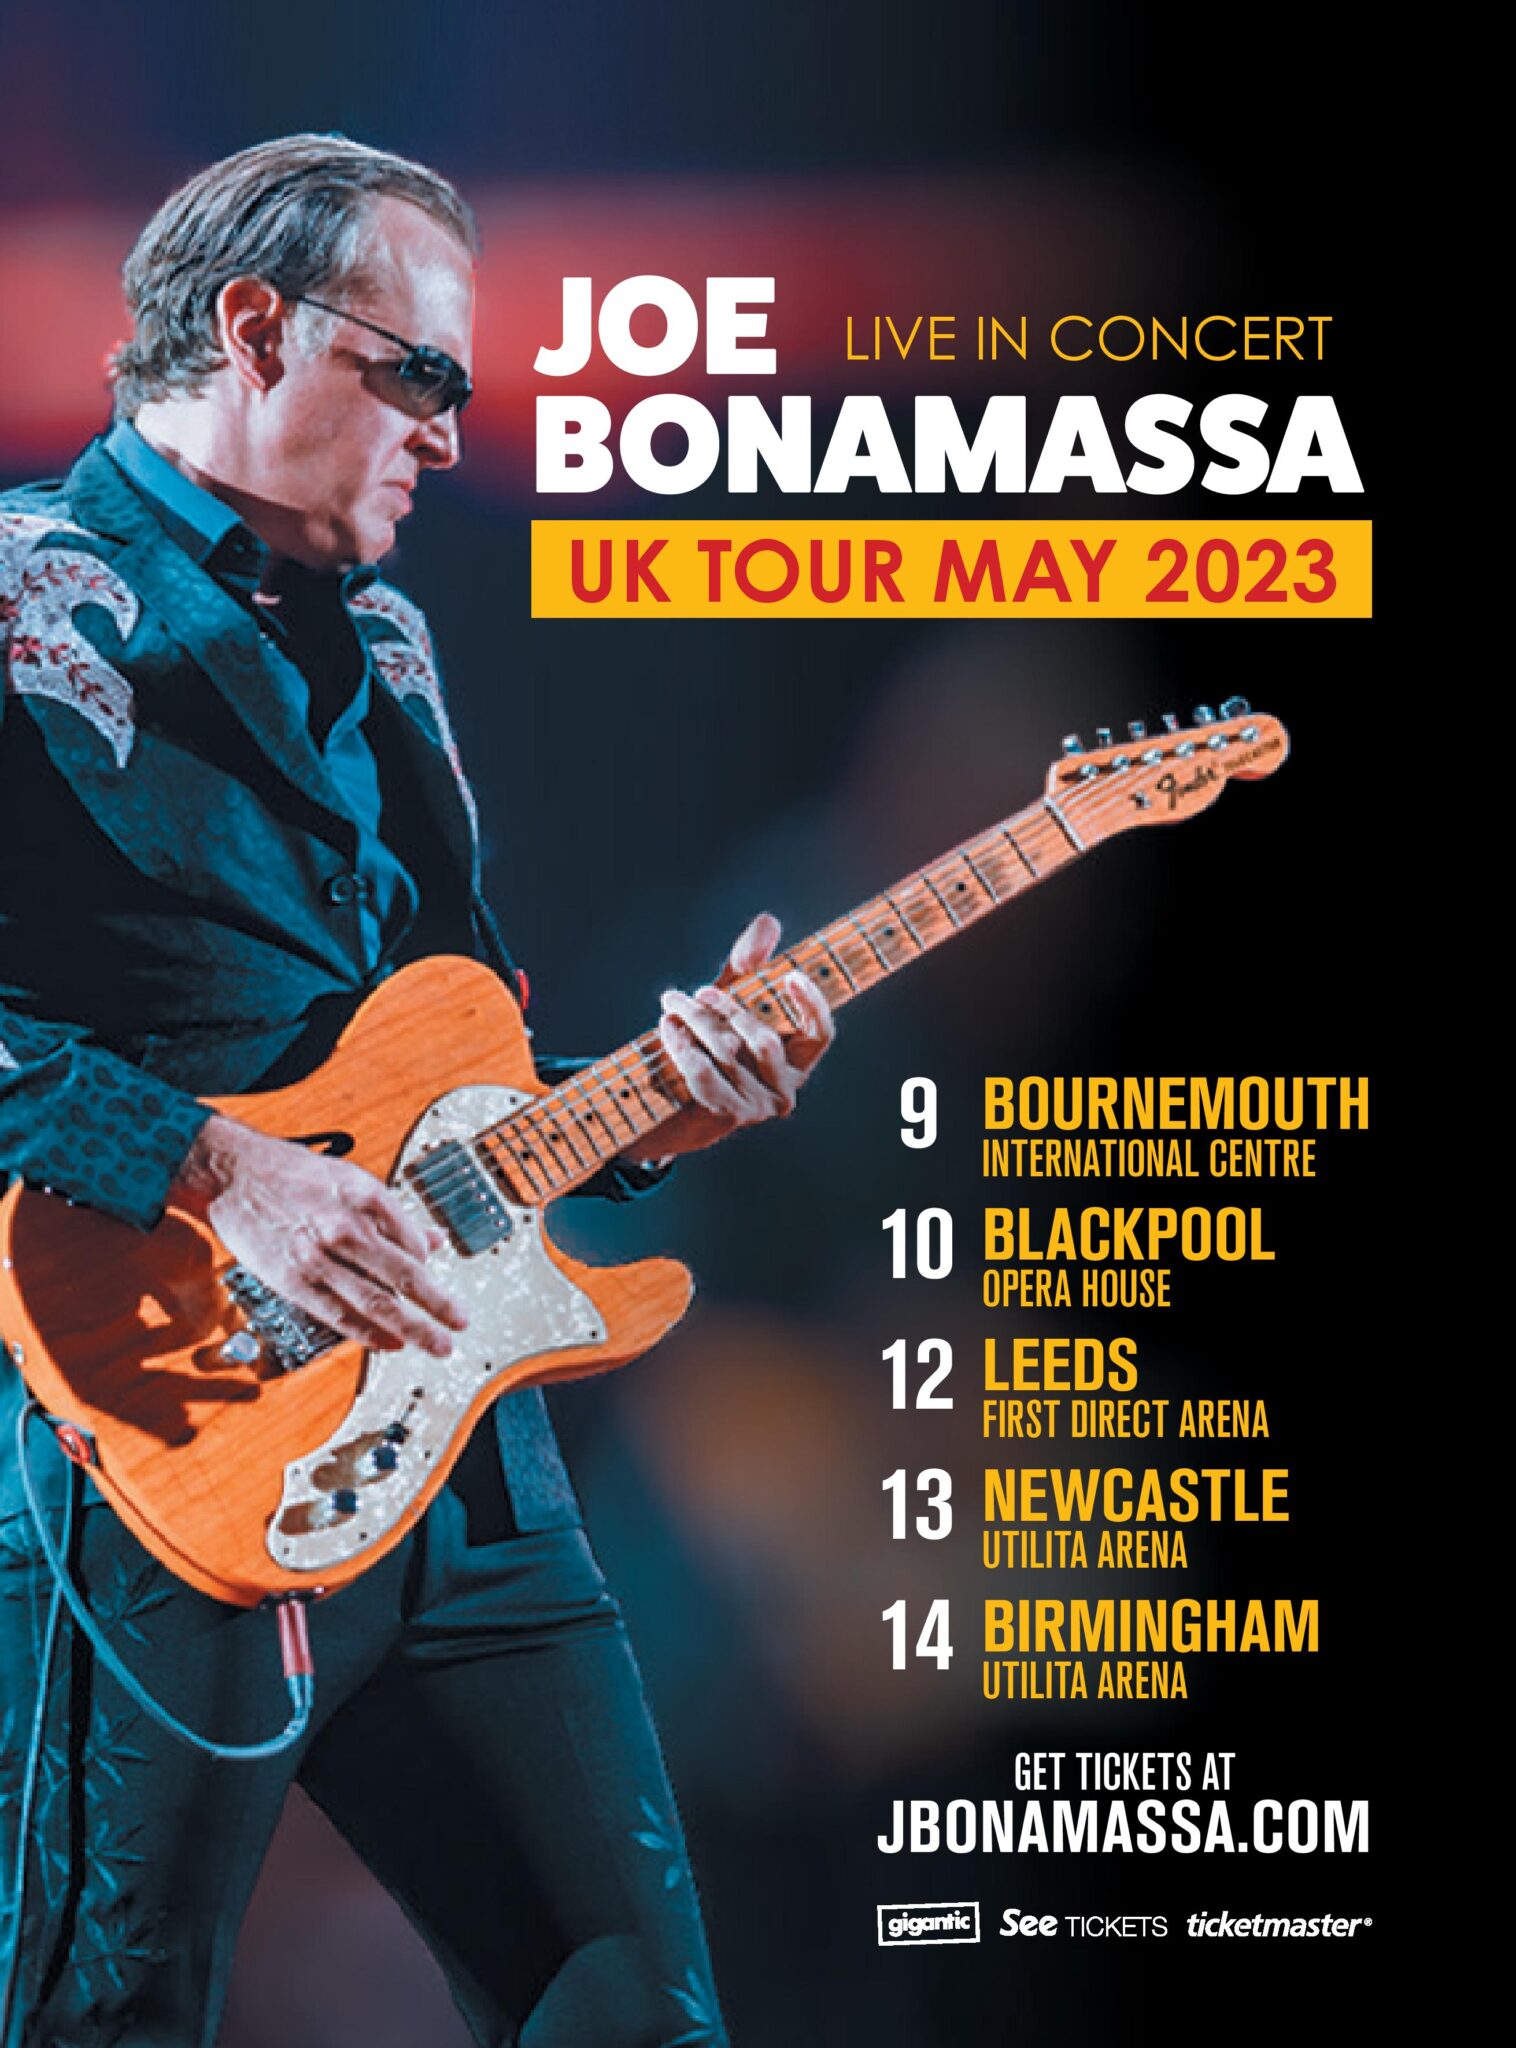 Joe Bonamassa announces May 2023 UK Arena Tour Devil's Gate Music